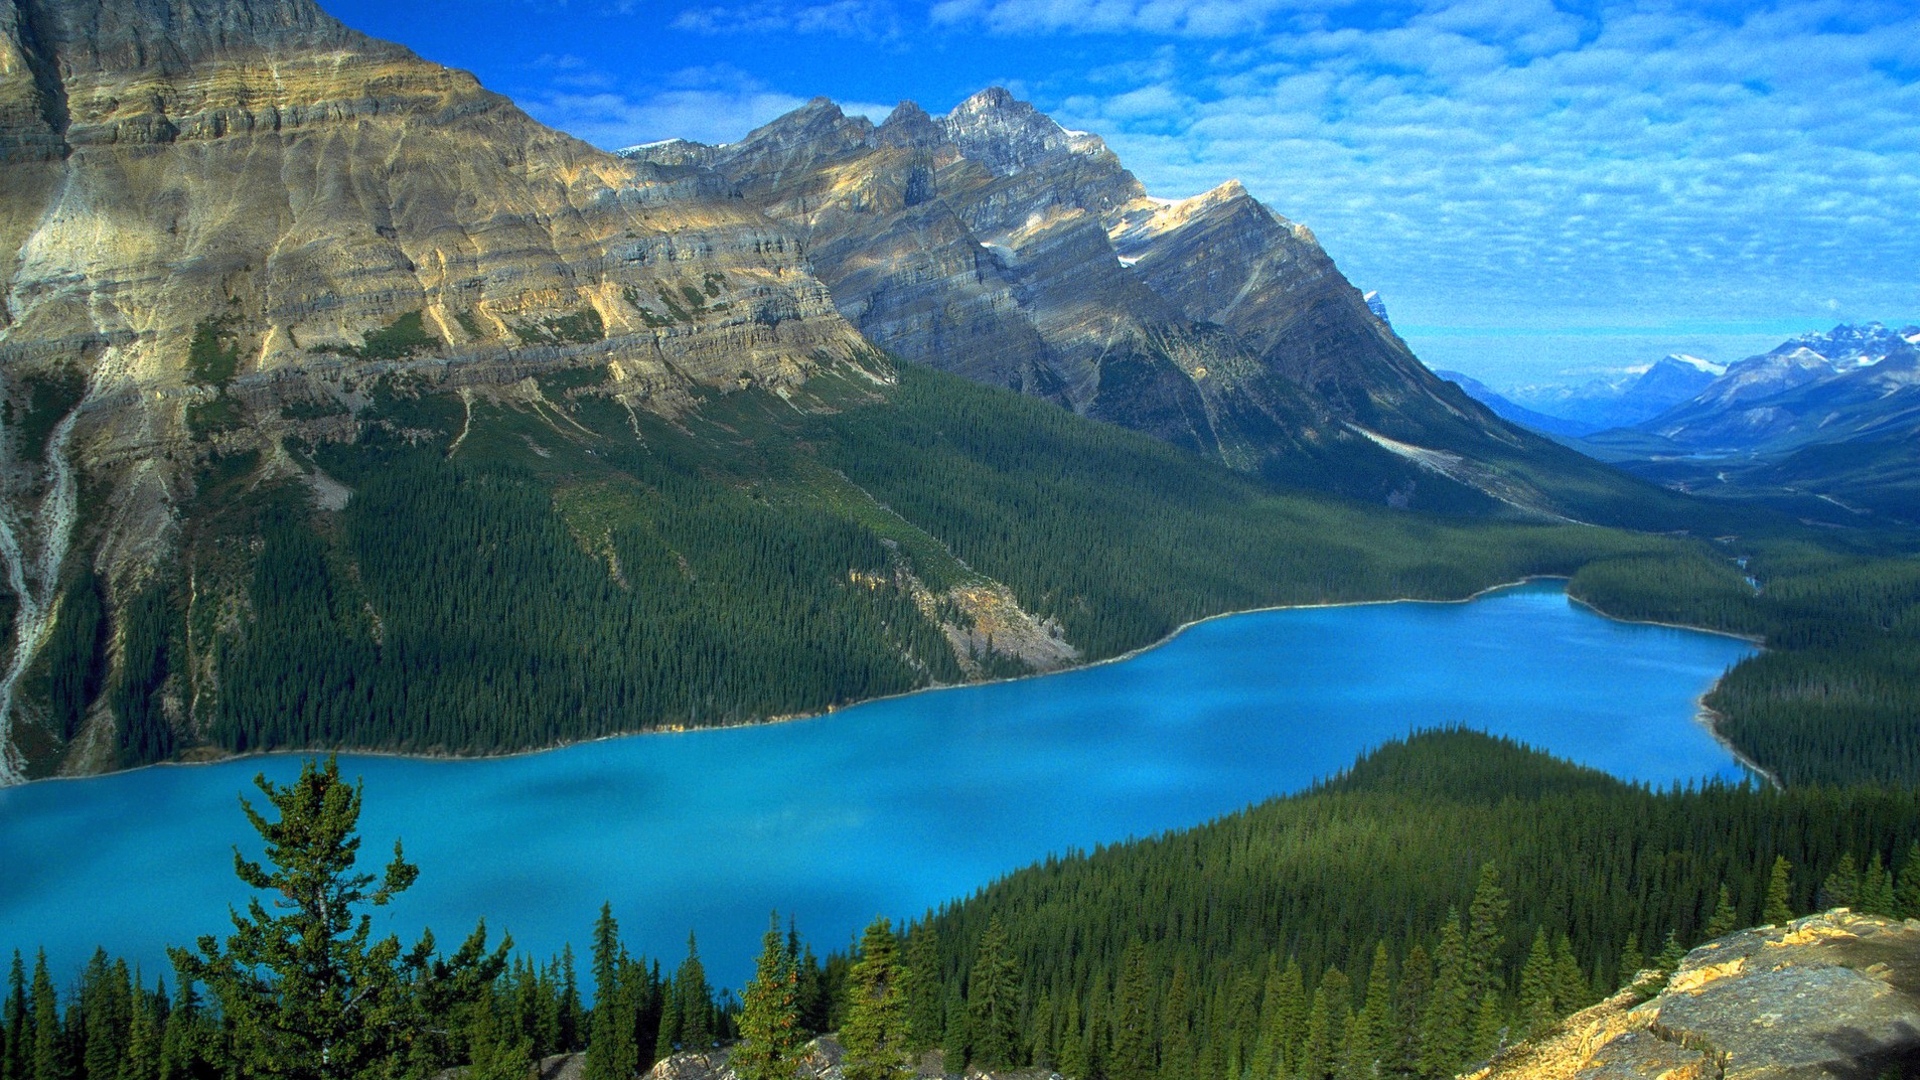 fond d'écran photo incroyable,montagne,la nature,paysage naturel,chaîne de montagnes,lac